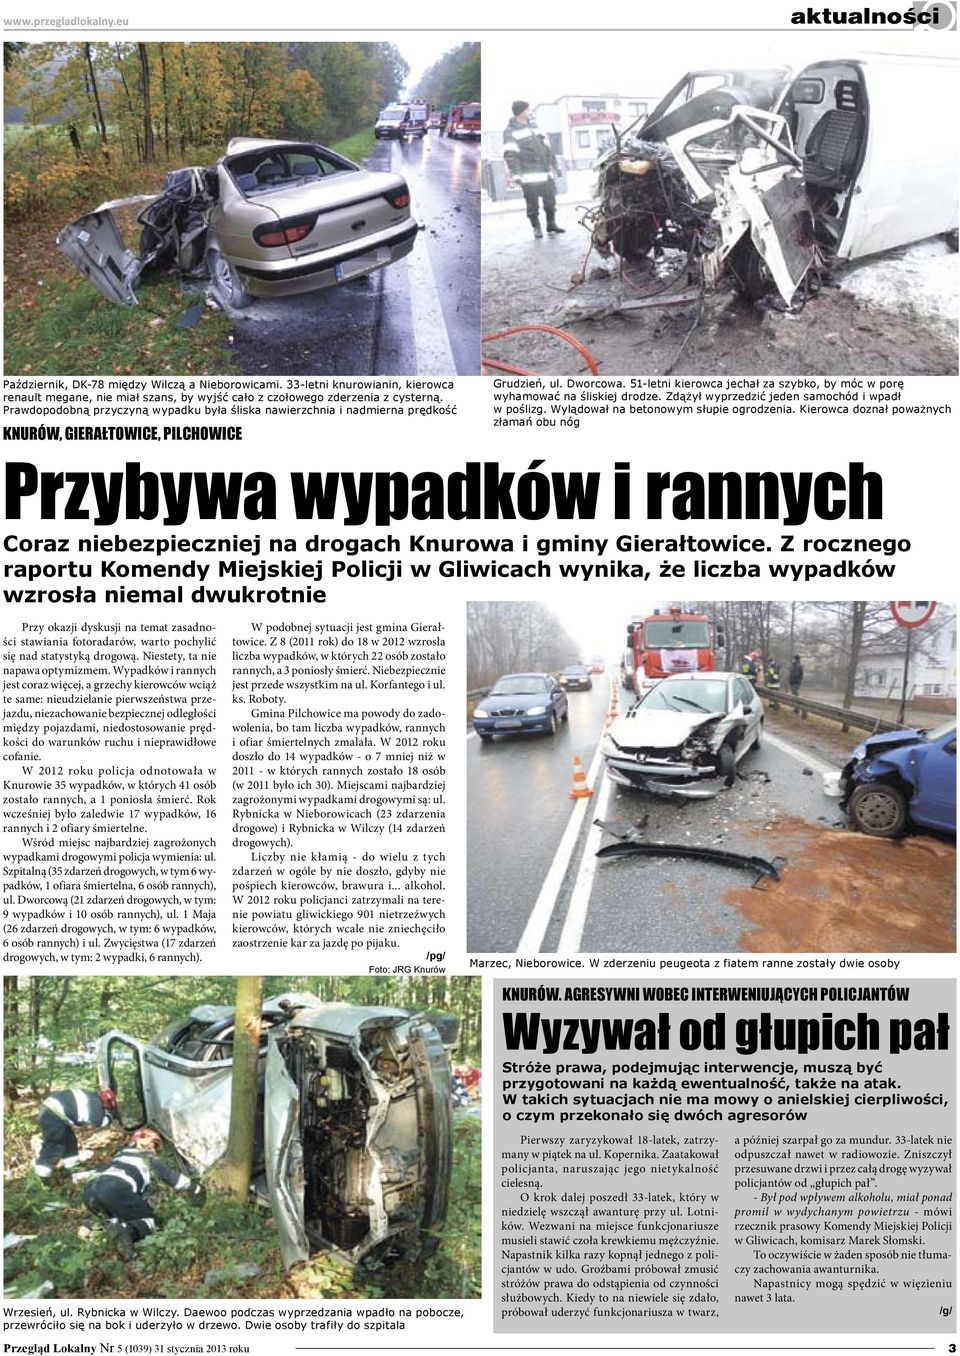 Prawdopodobną przyczyną wypadku była śliska nawierzchnia i nadmierna prędkość, Gierałtowice, Pilchowice Grudzień, ul. Dworcowa.